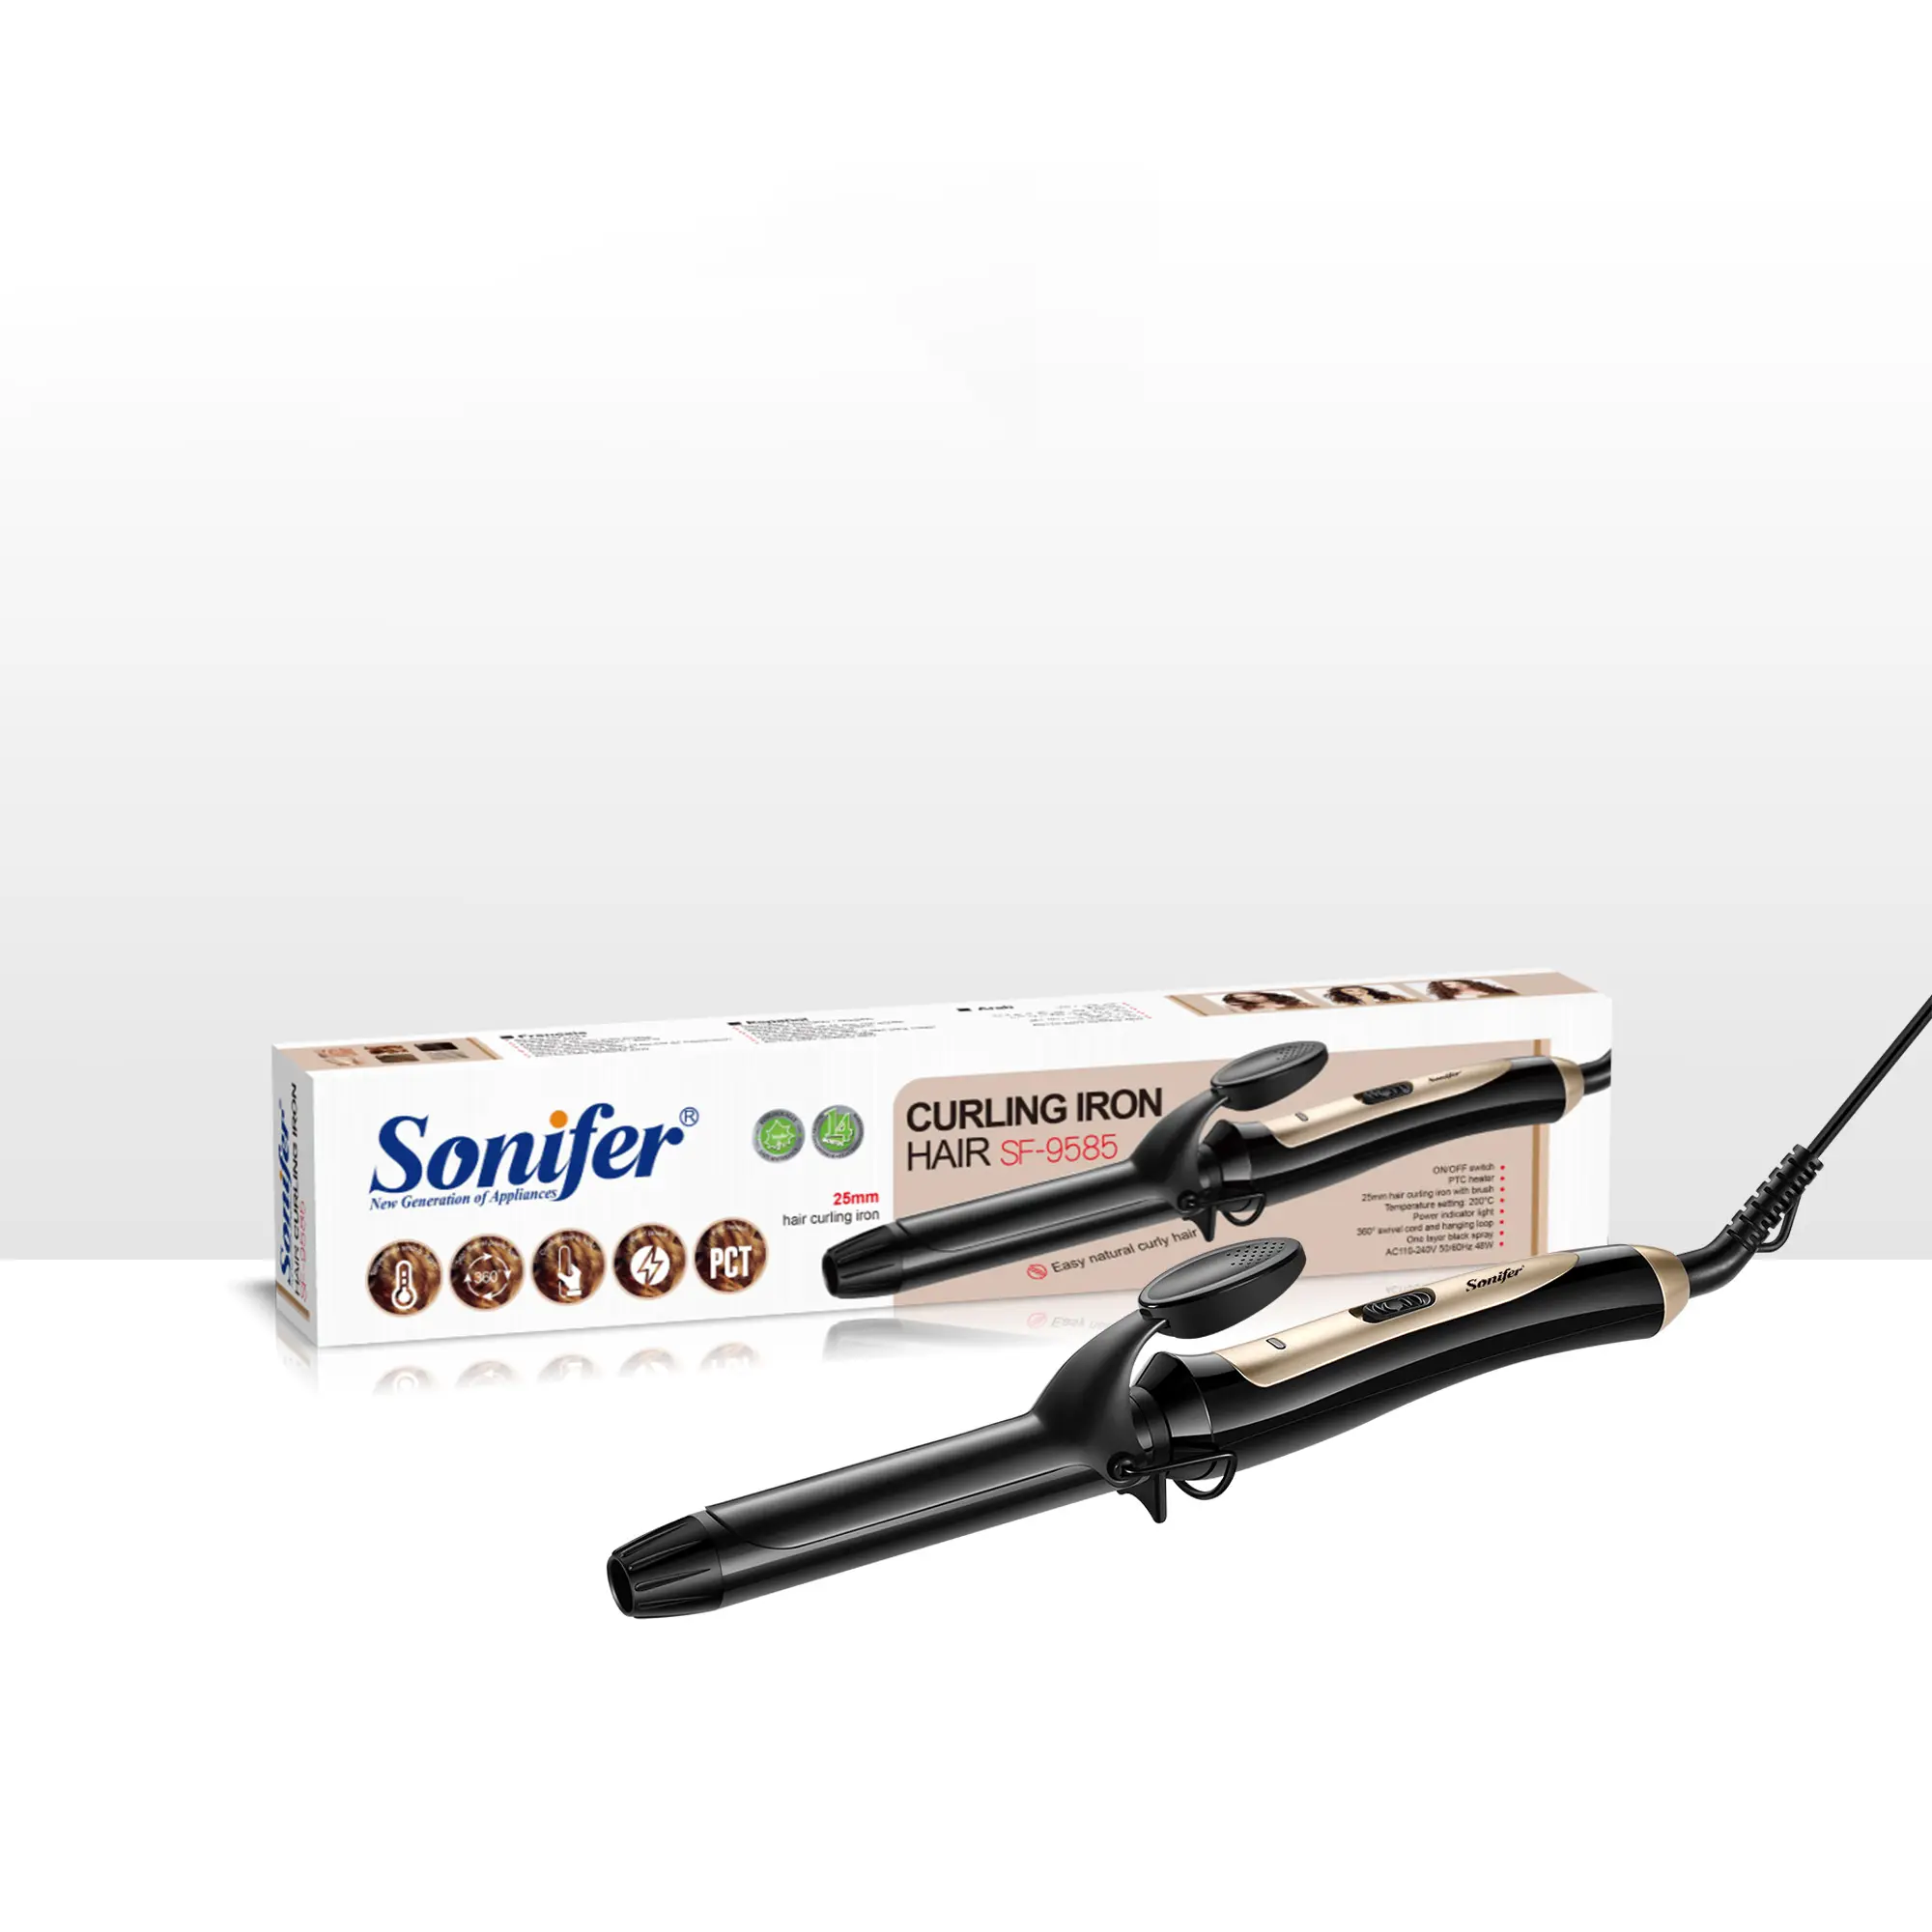 جهاز فصل الشعر المجعد الطبيعي السهل من Sonifer طراز SF-9585، معدن تجعيد الشعر بحجم 25 ملم، أداة تجميل منزلية وعمل السفر والعناية الشخصية